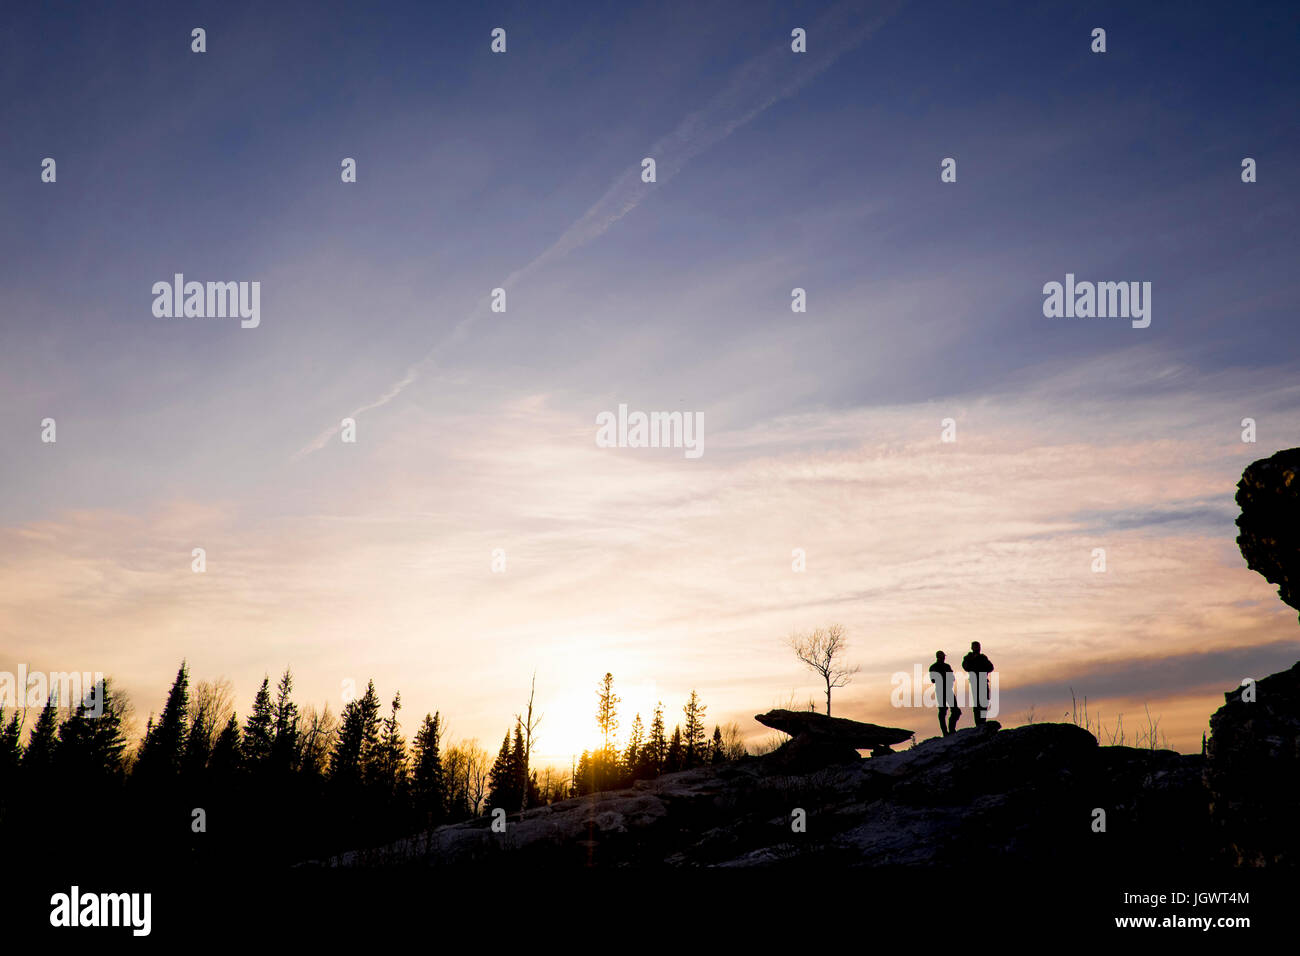 Silhouette d'amis sur le dessus des roches au coucher du soleil, de l'Oural Bolshoy, Sverdlovsk, Russie, Europe Banque D'Images